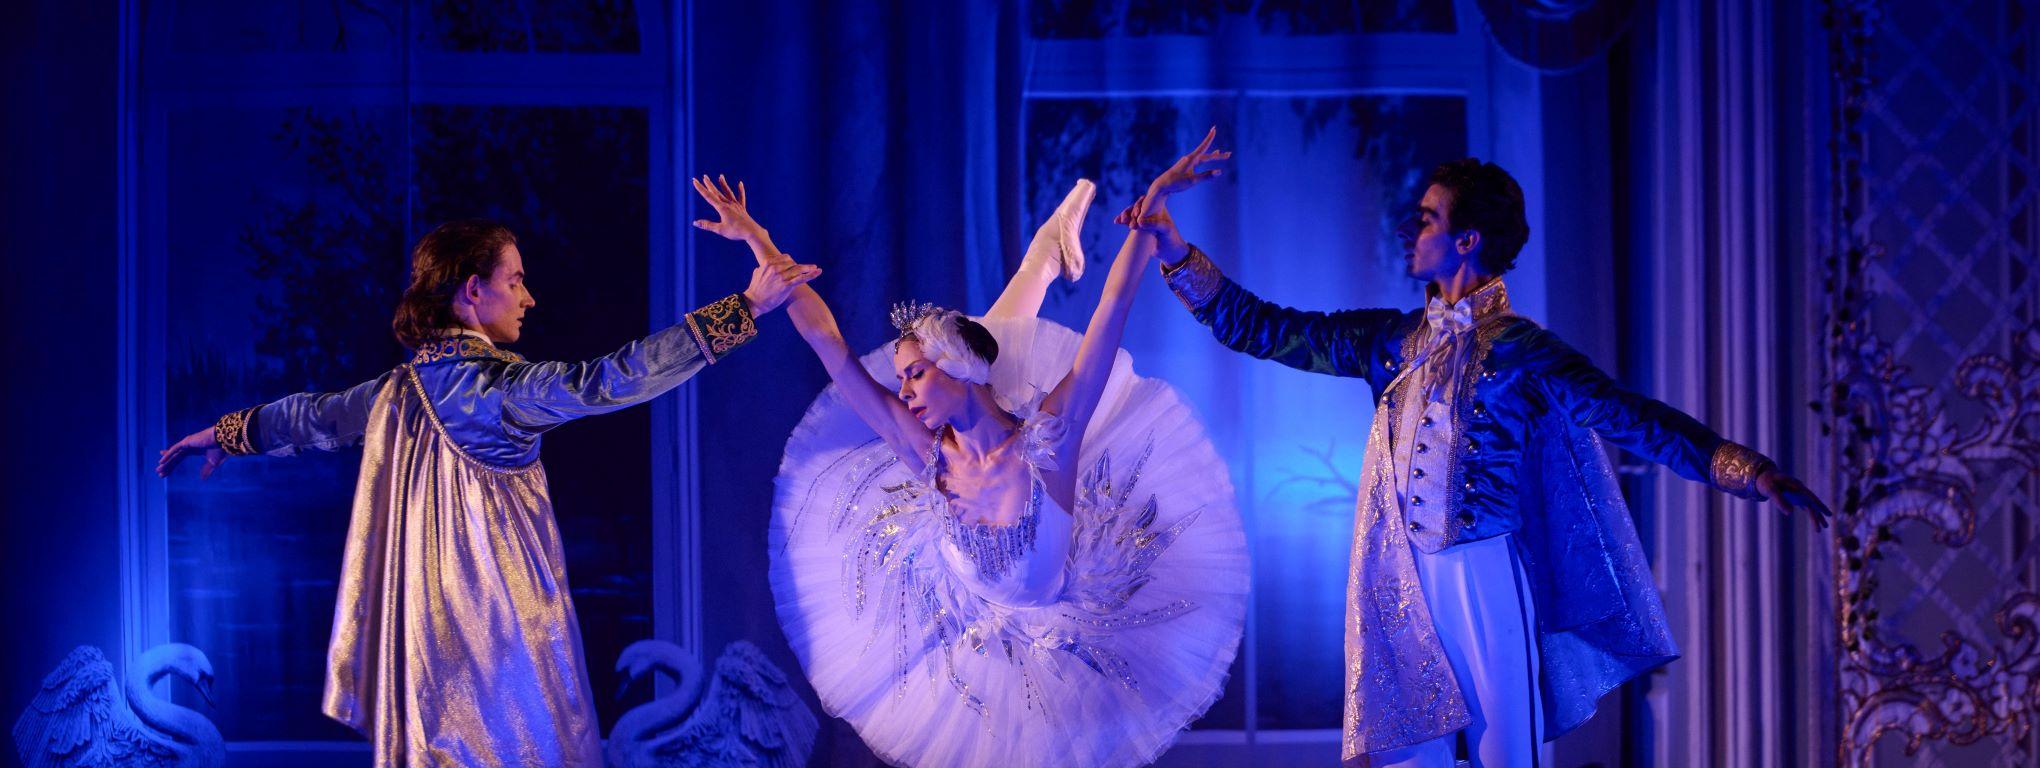 Премьера балета «Лебединое озеро» во дворце Белосельских-Белозерских со скидкой 30%